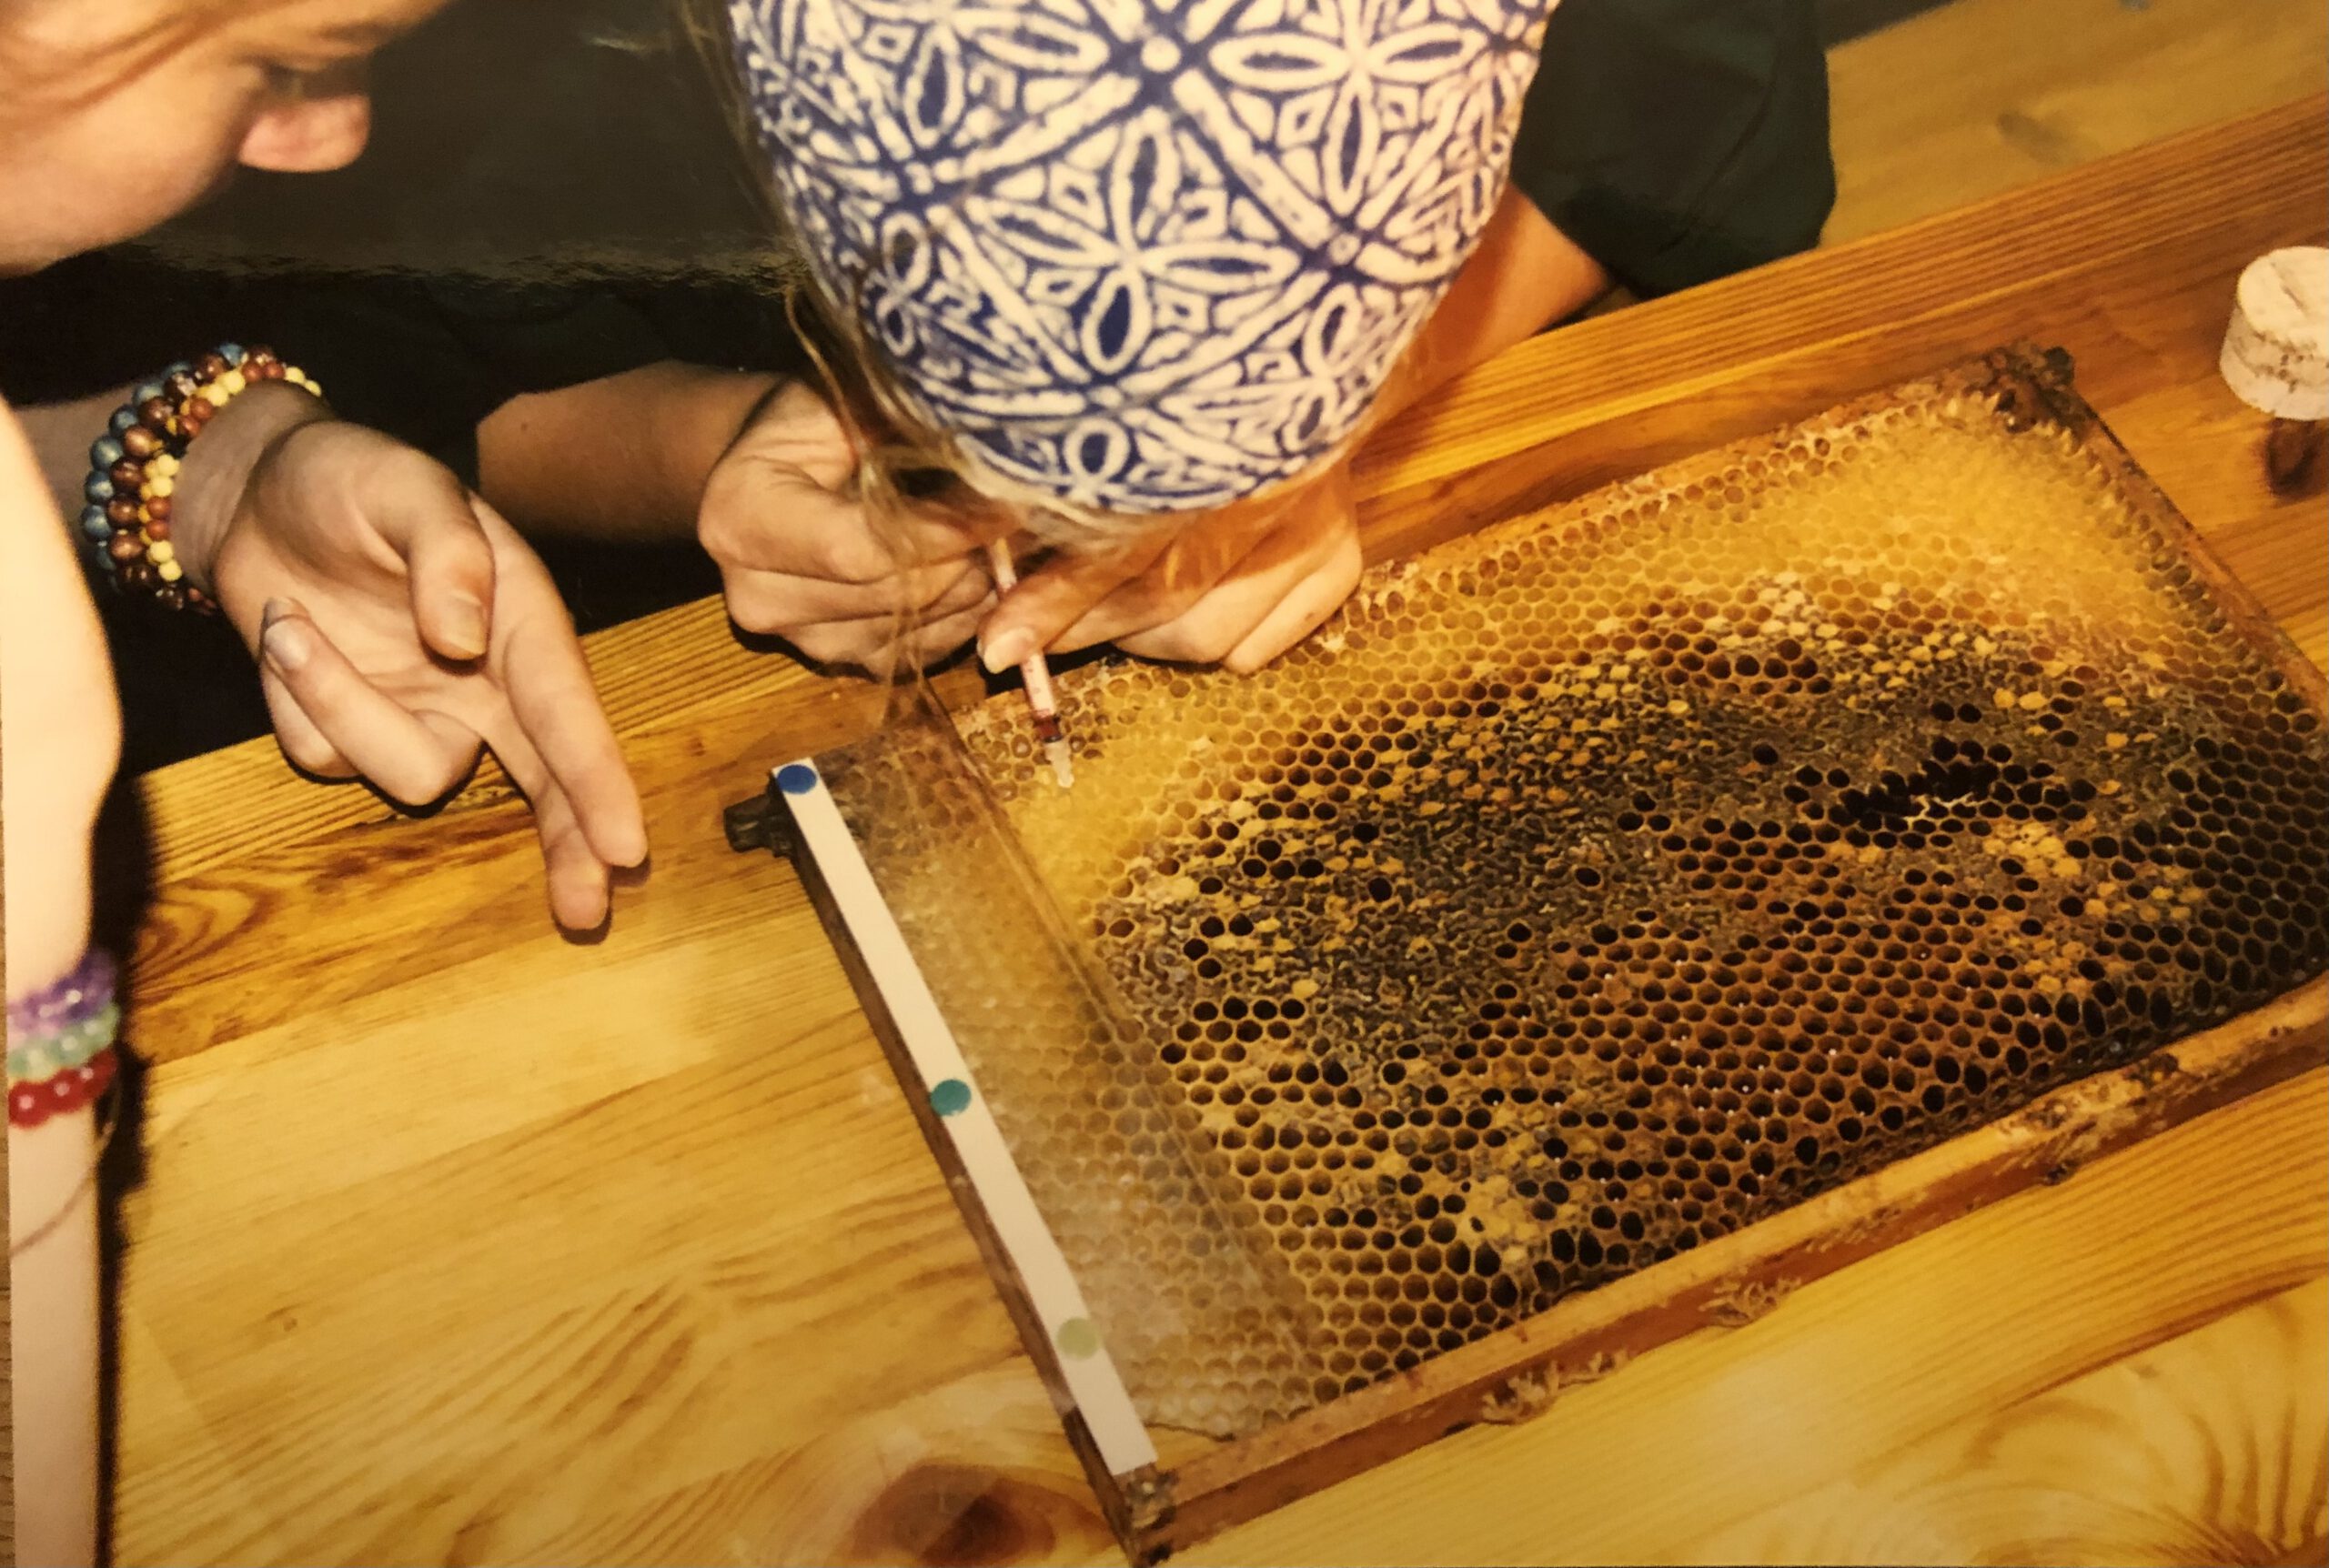 Besamung von Bieneneiern mit Insulinspritze